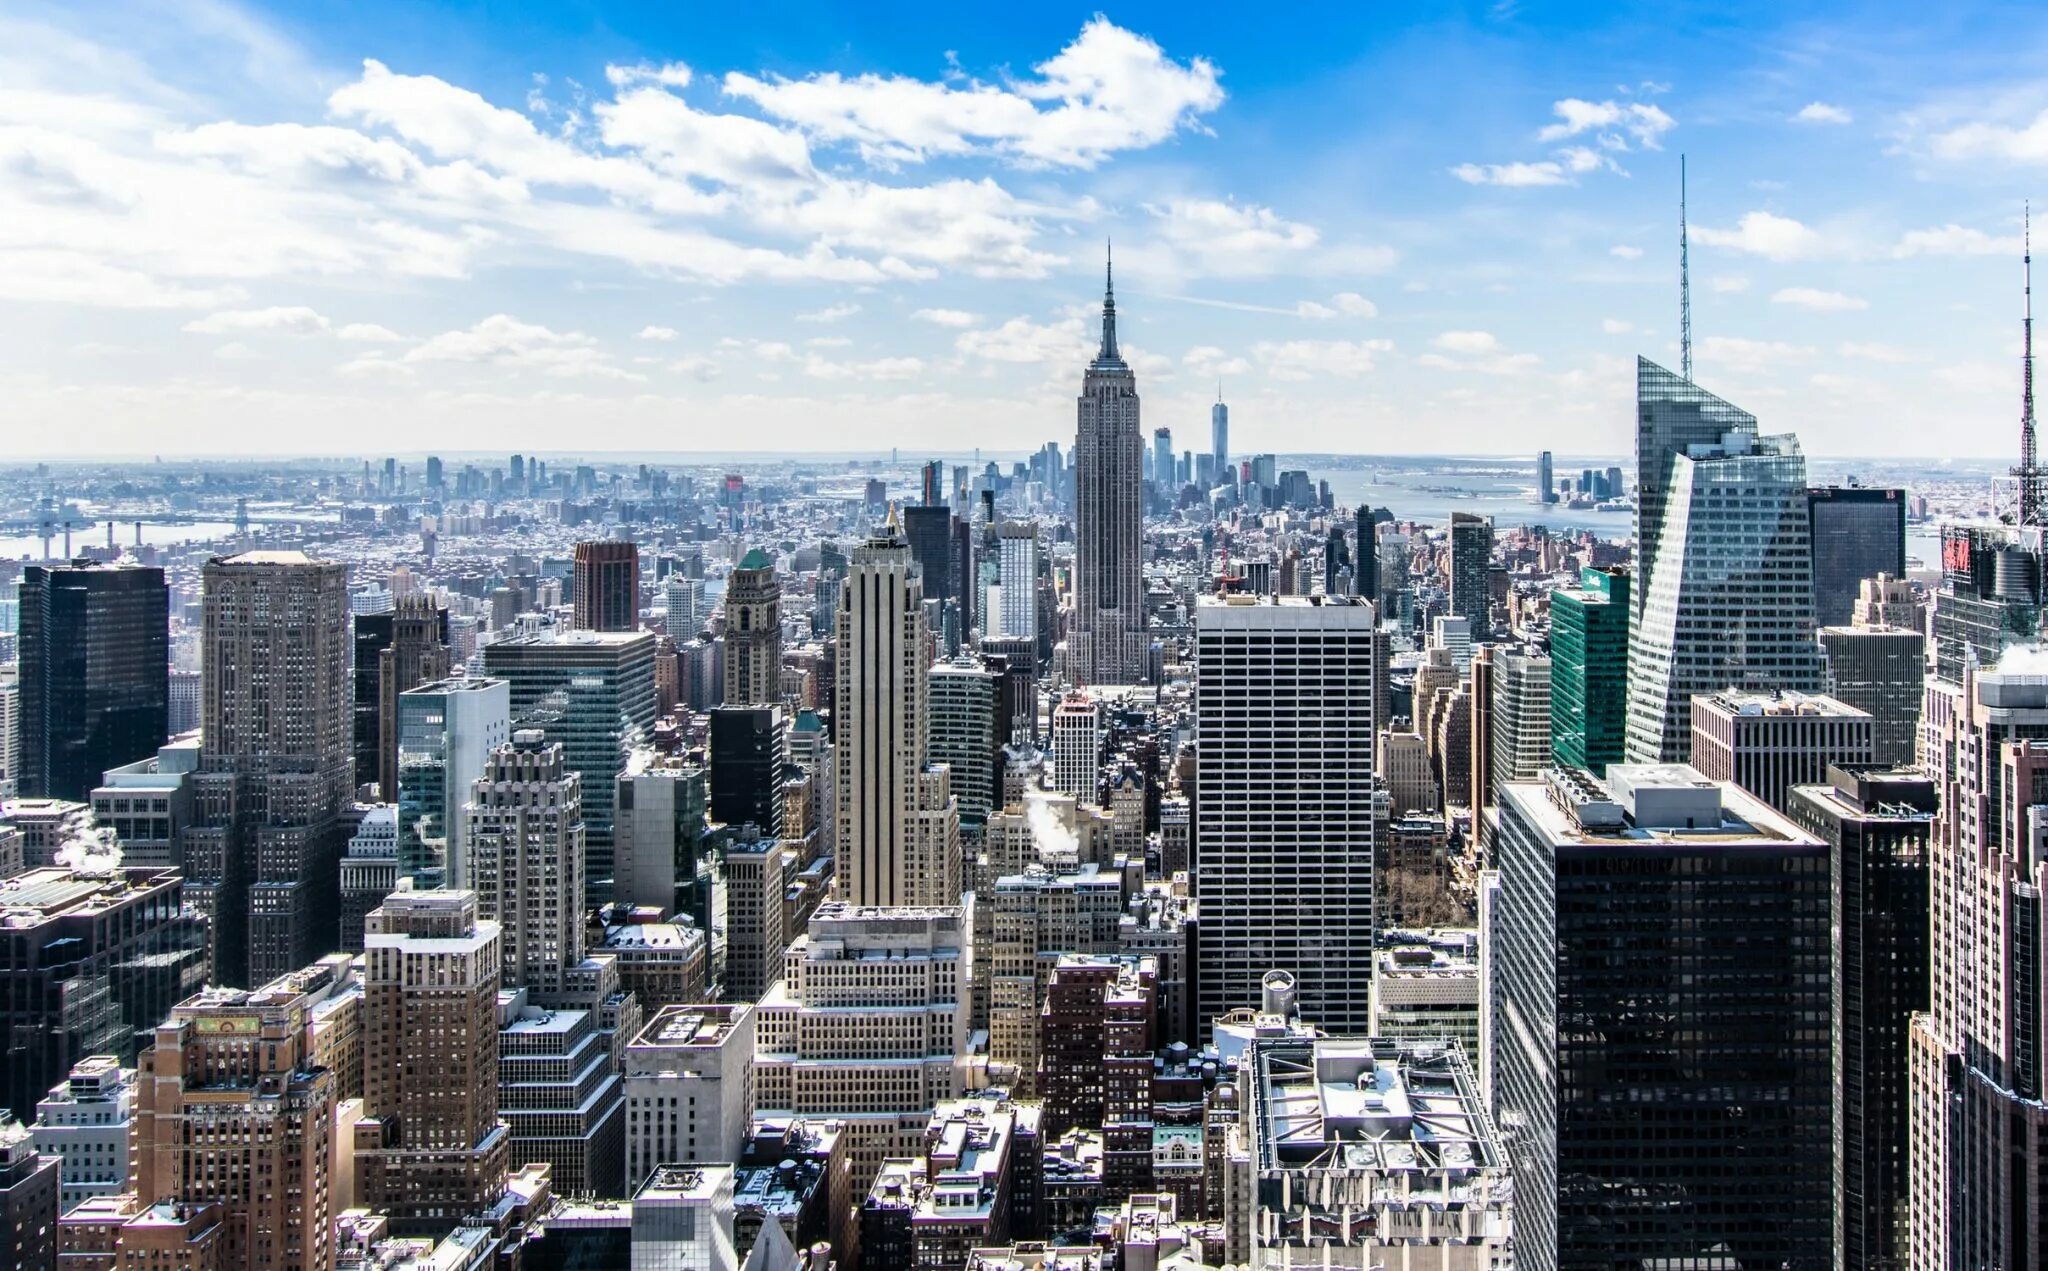 New york is really. Америка Нью-Йорк Манхэттен. Нью Йорк финансовый центр. Панорама Нью Йорк 4к. Эмпайр-Стейт-Билдинг.